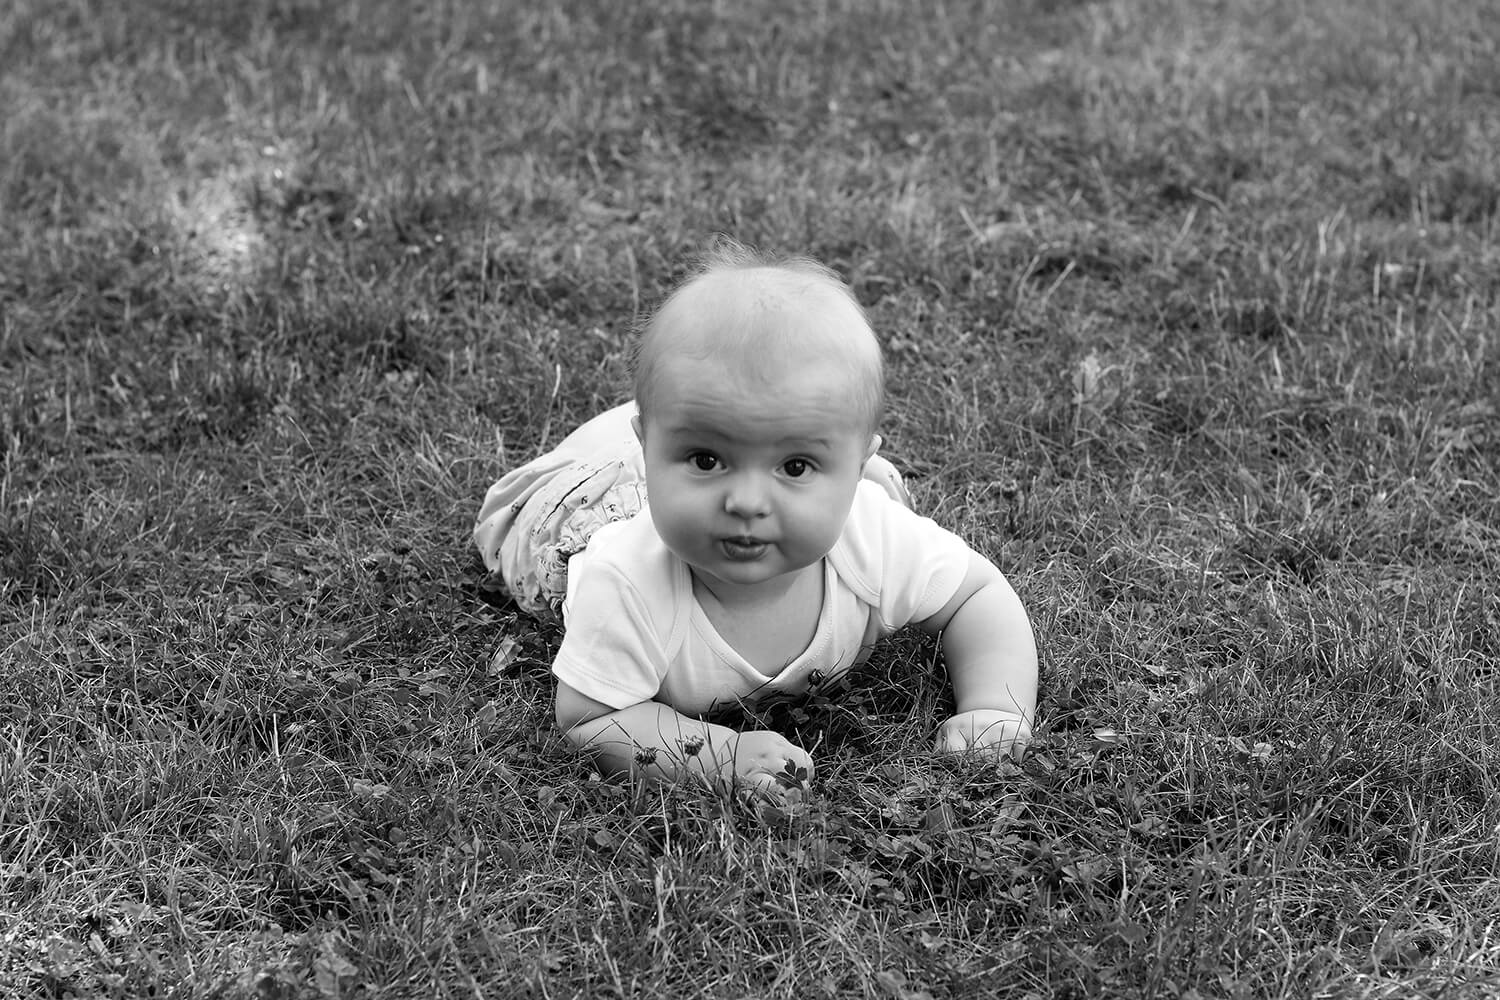 černobílá rodinná fotografie batolete na trávě